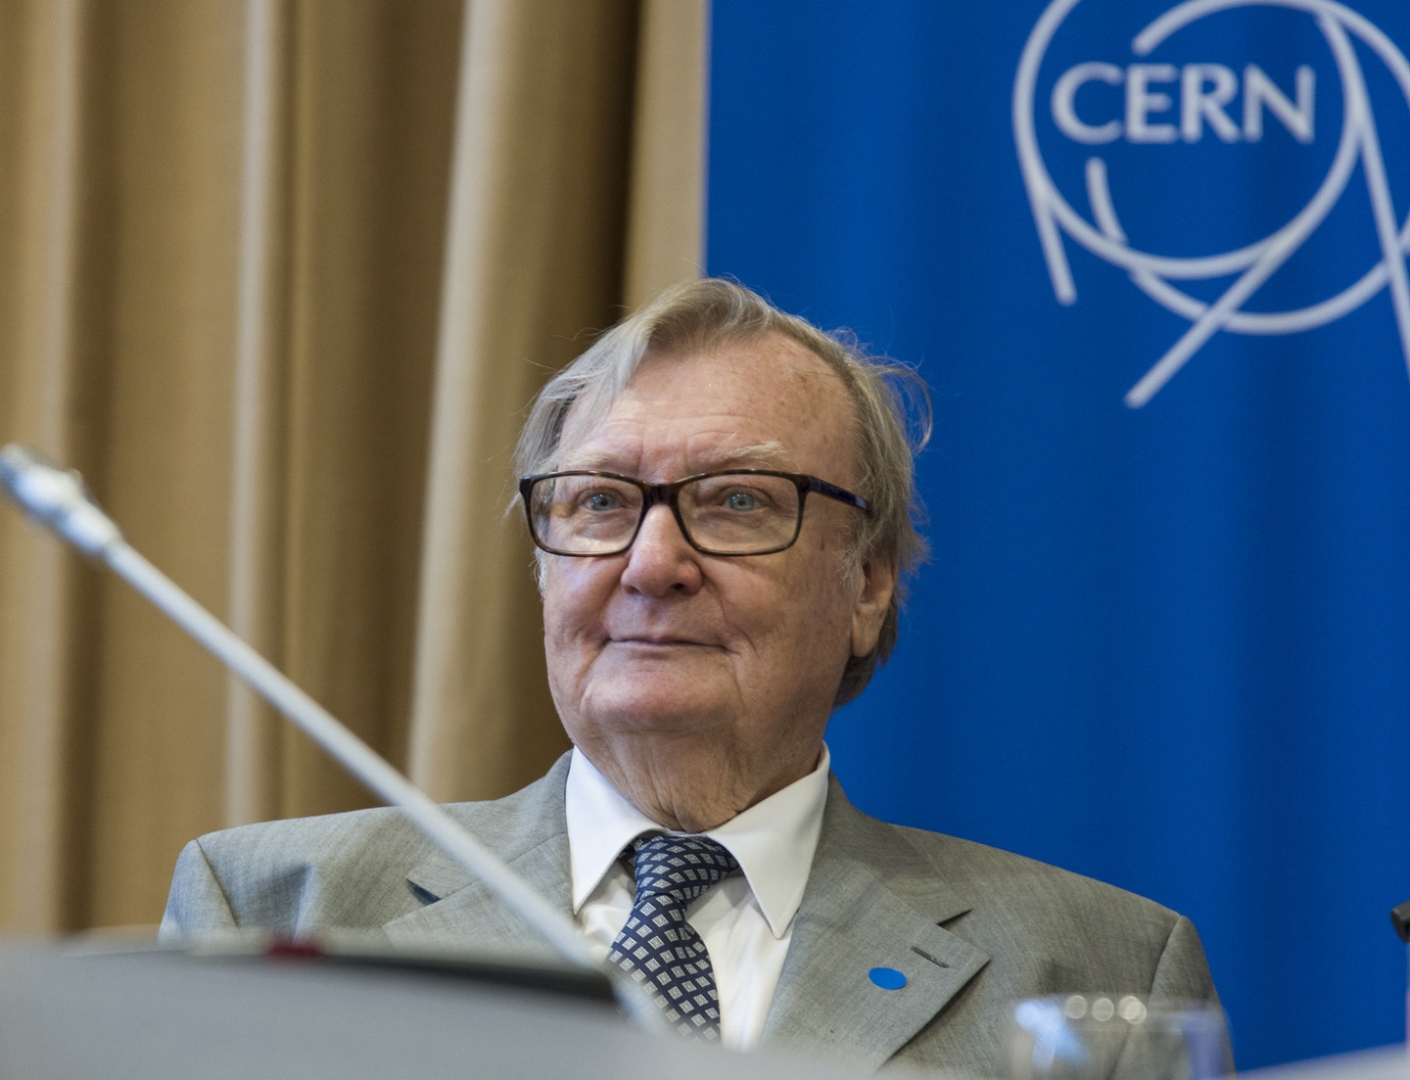 Carlo Rubbia awarded China’s highest scientific prize